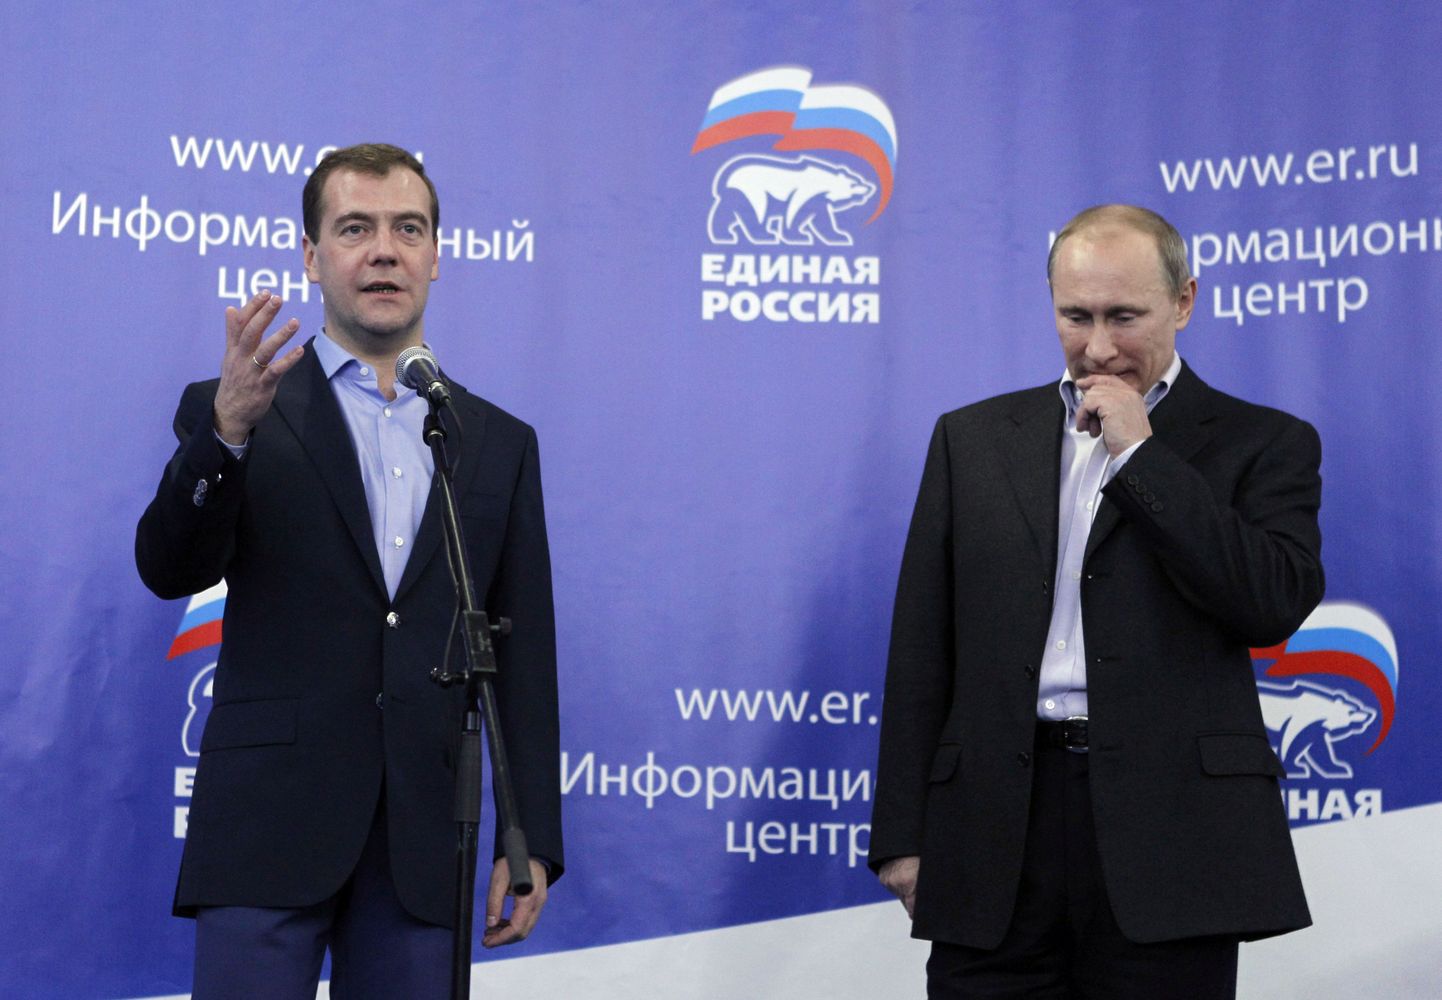 Dmitri Medvedev ja Vladimir Putin (paremal) täna Ühtse Venemaa kommunikatsioonikeskuses.